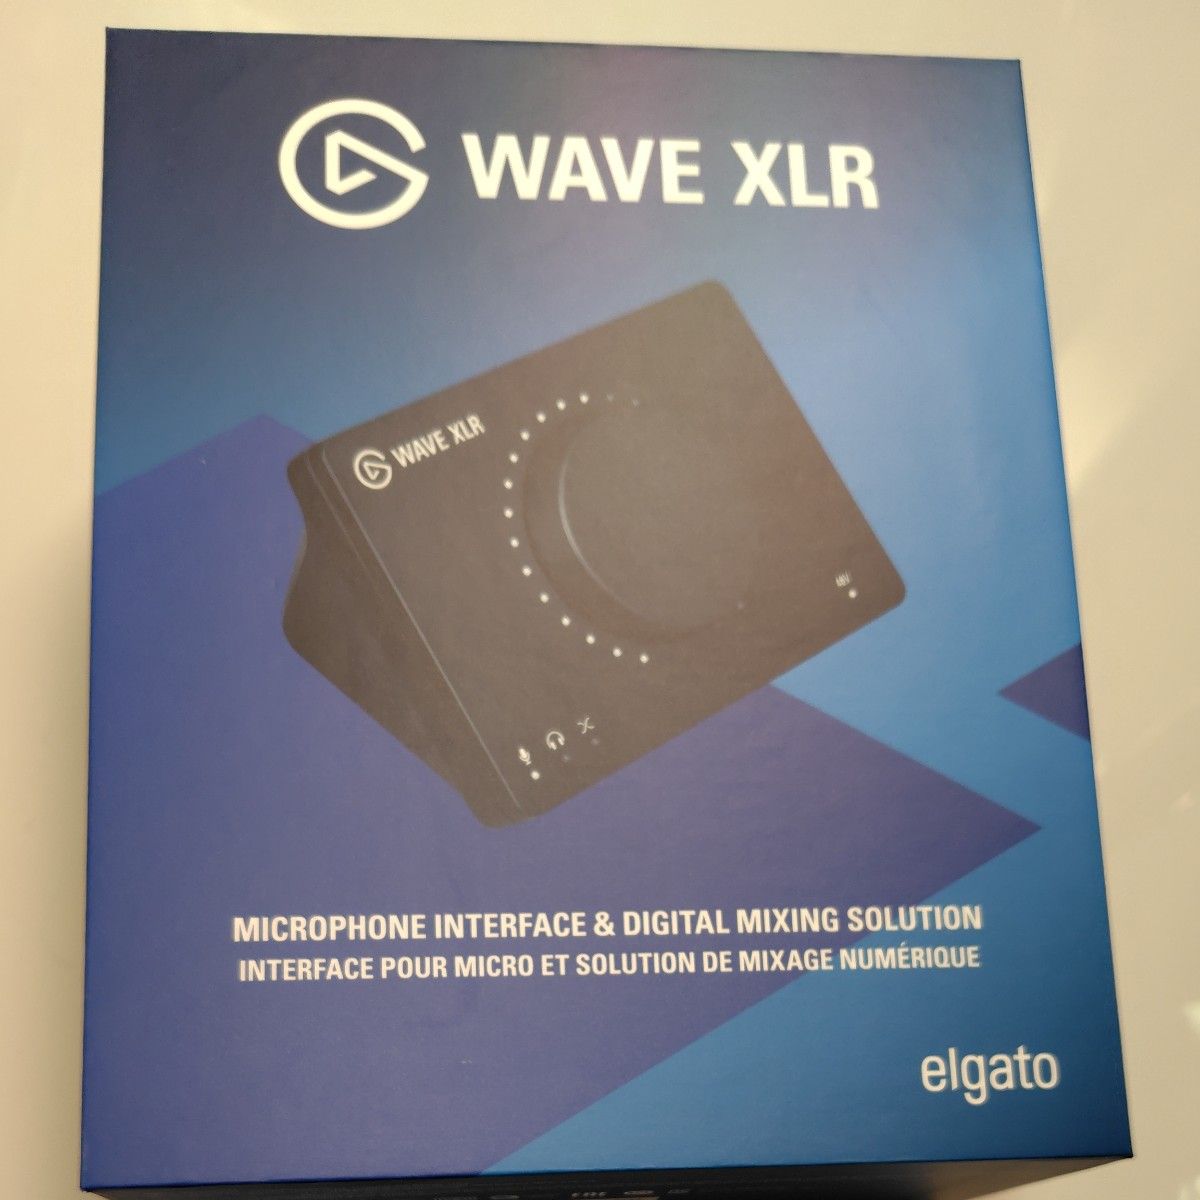 【新品未使用】エルガト Elgato WAVE XLR 10MAG9900-JP 日本語パッケージ マイクインターフェイス 配信 